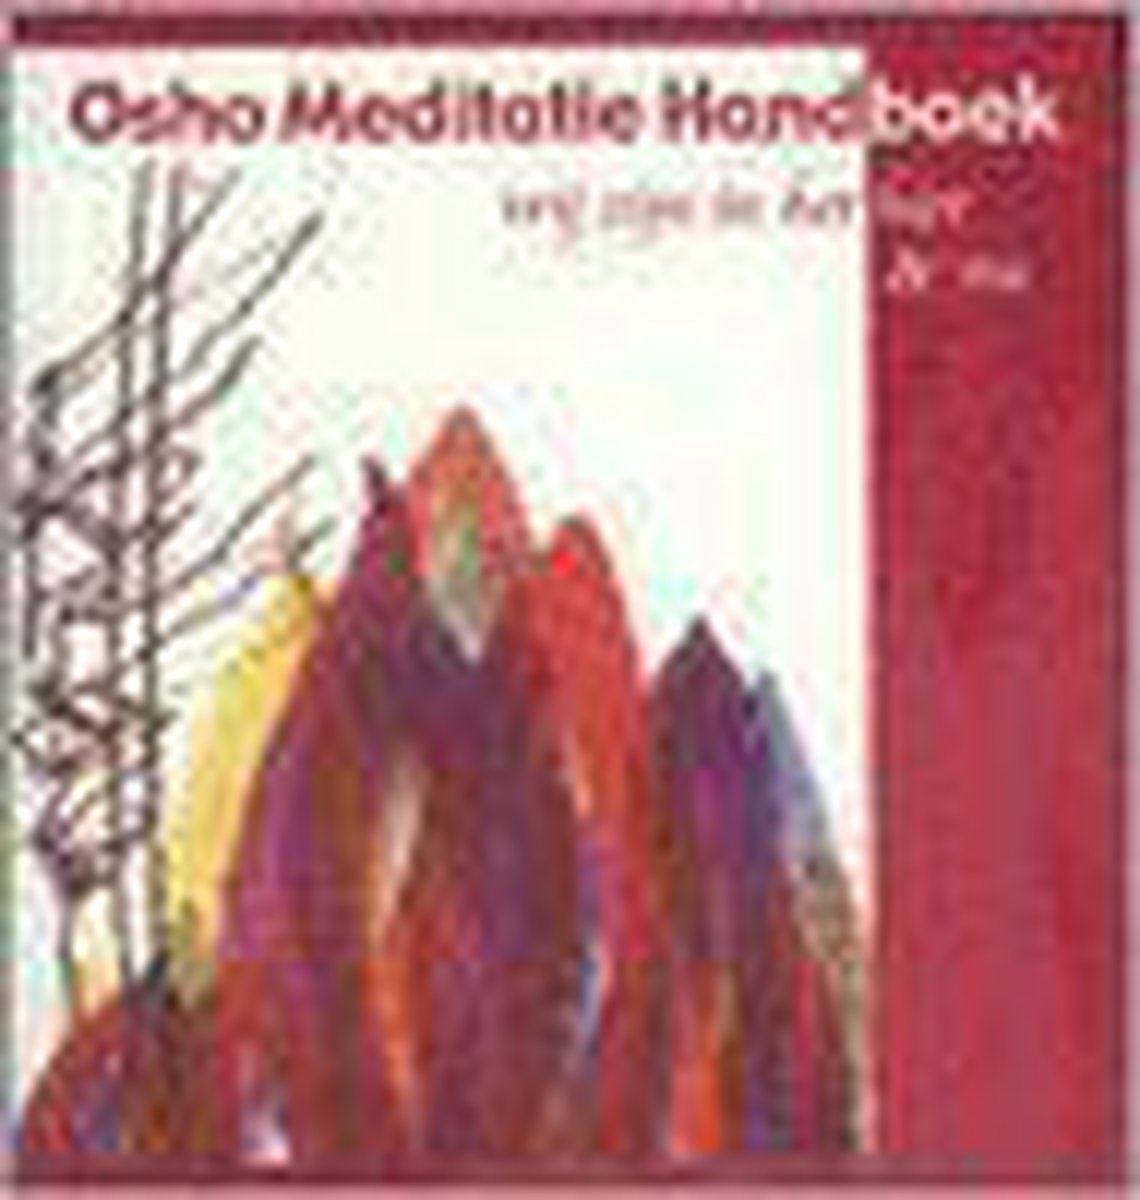 Osho Meditatie Handboek